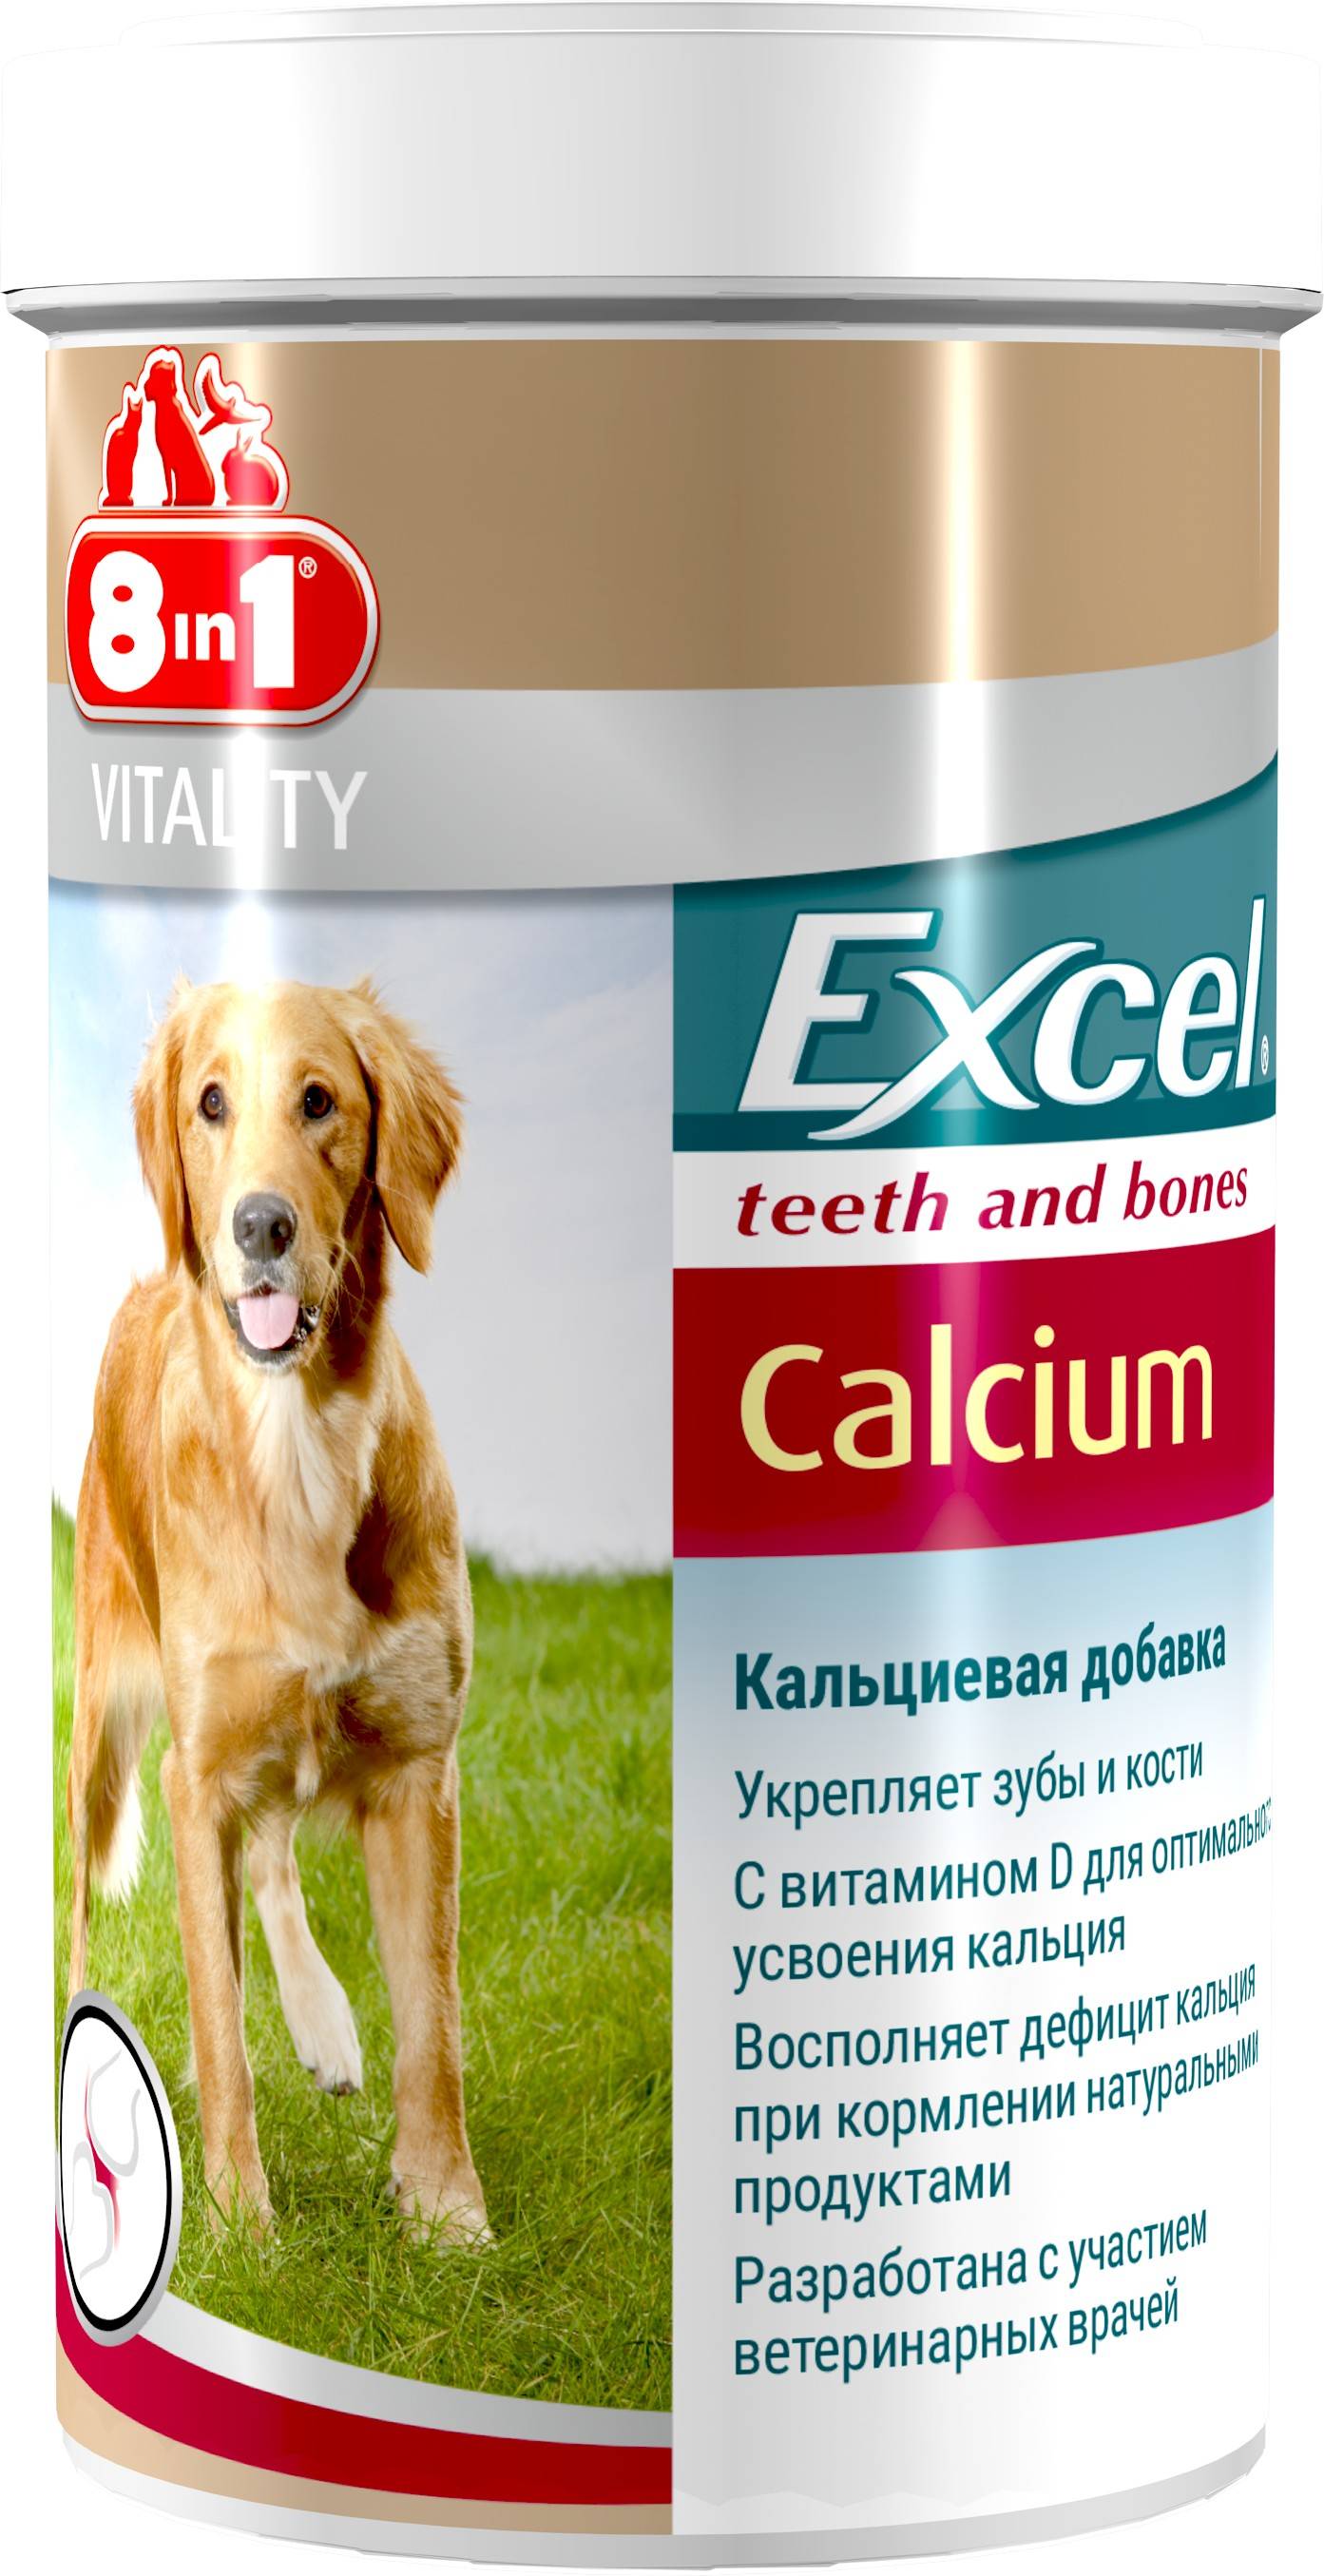 8in1 Calcium – кальциевая добавка для щенков и взрослых собак